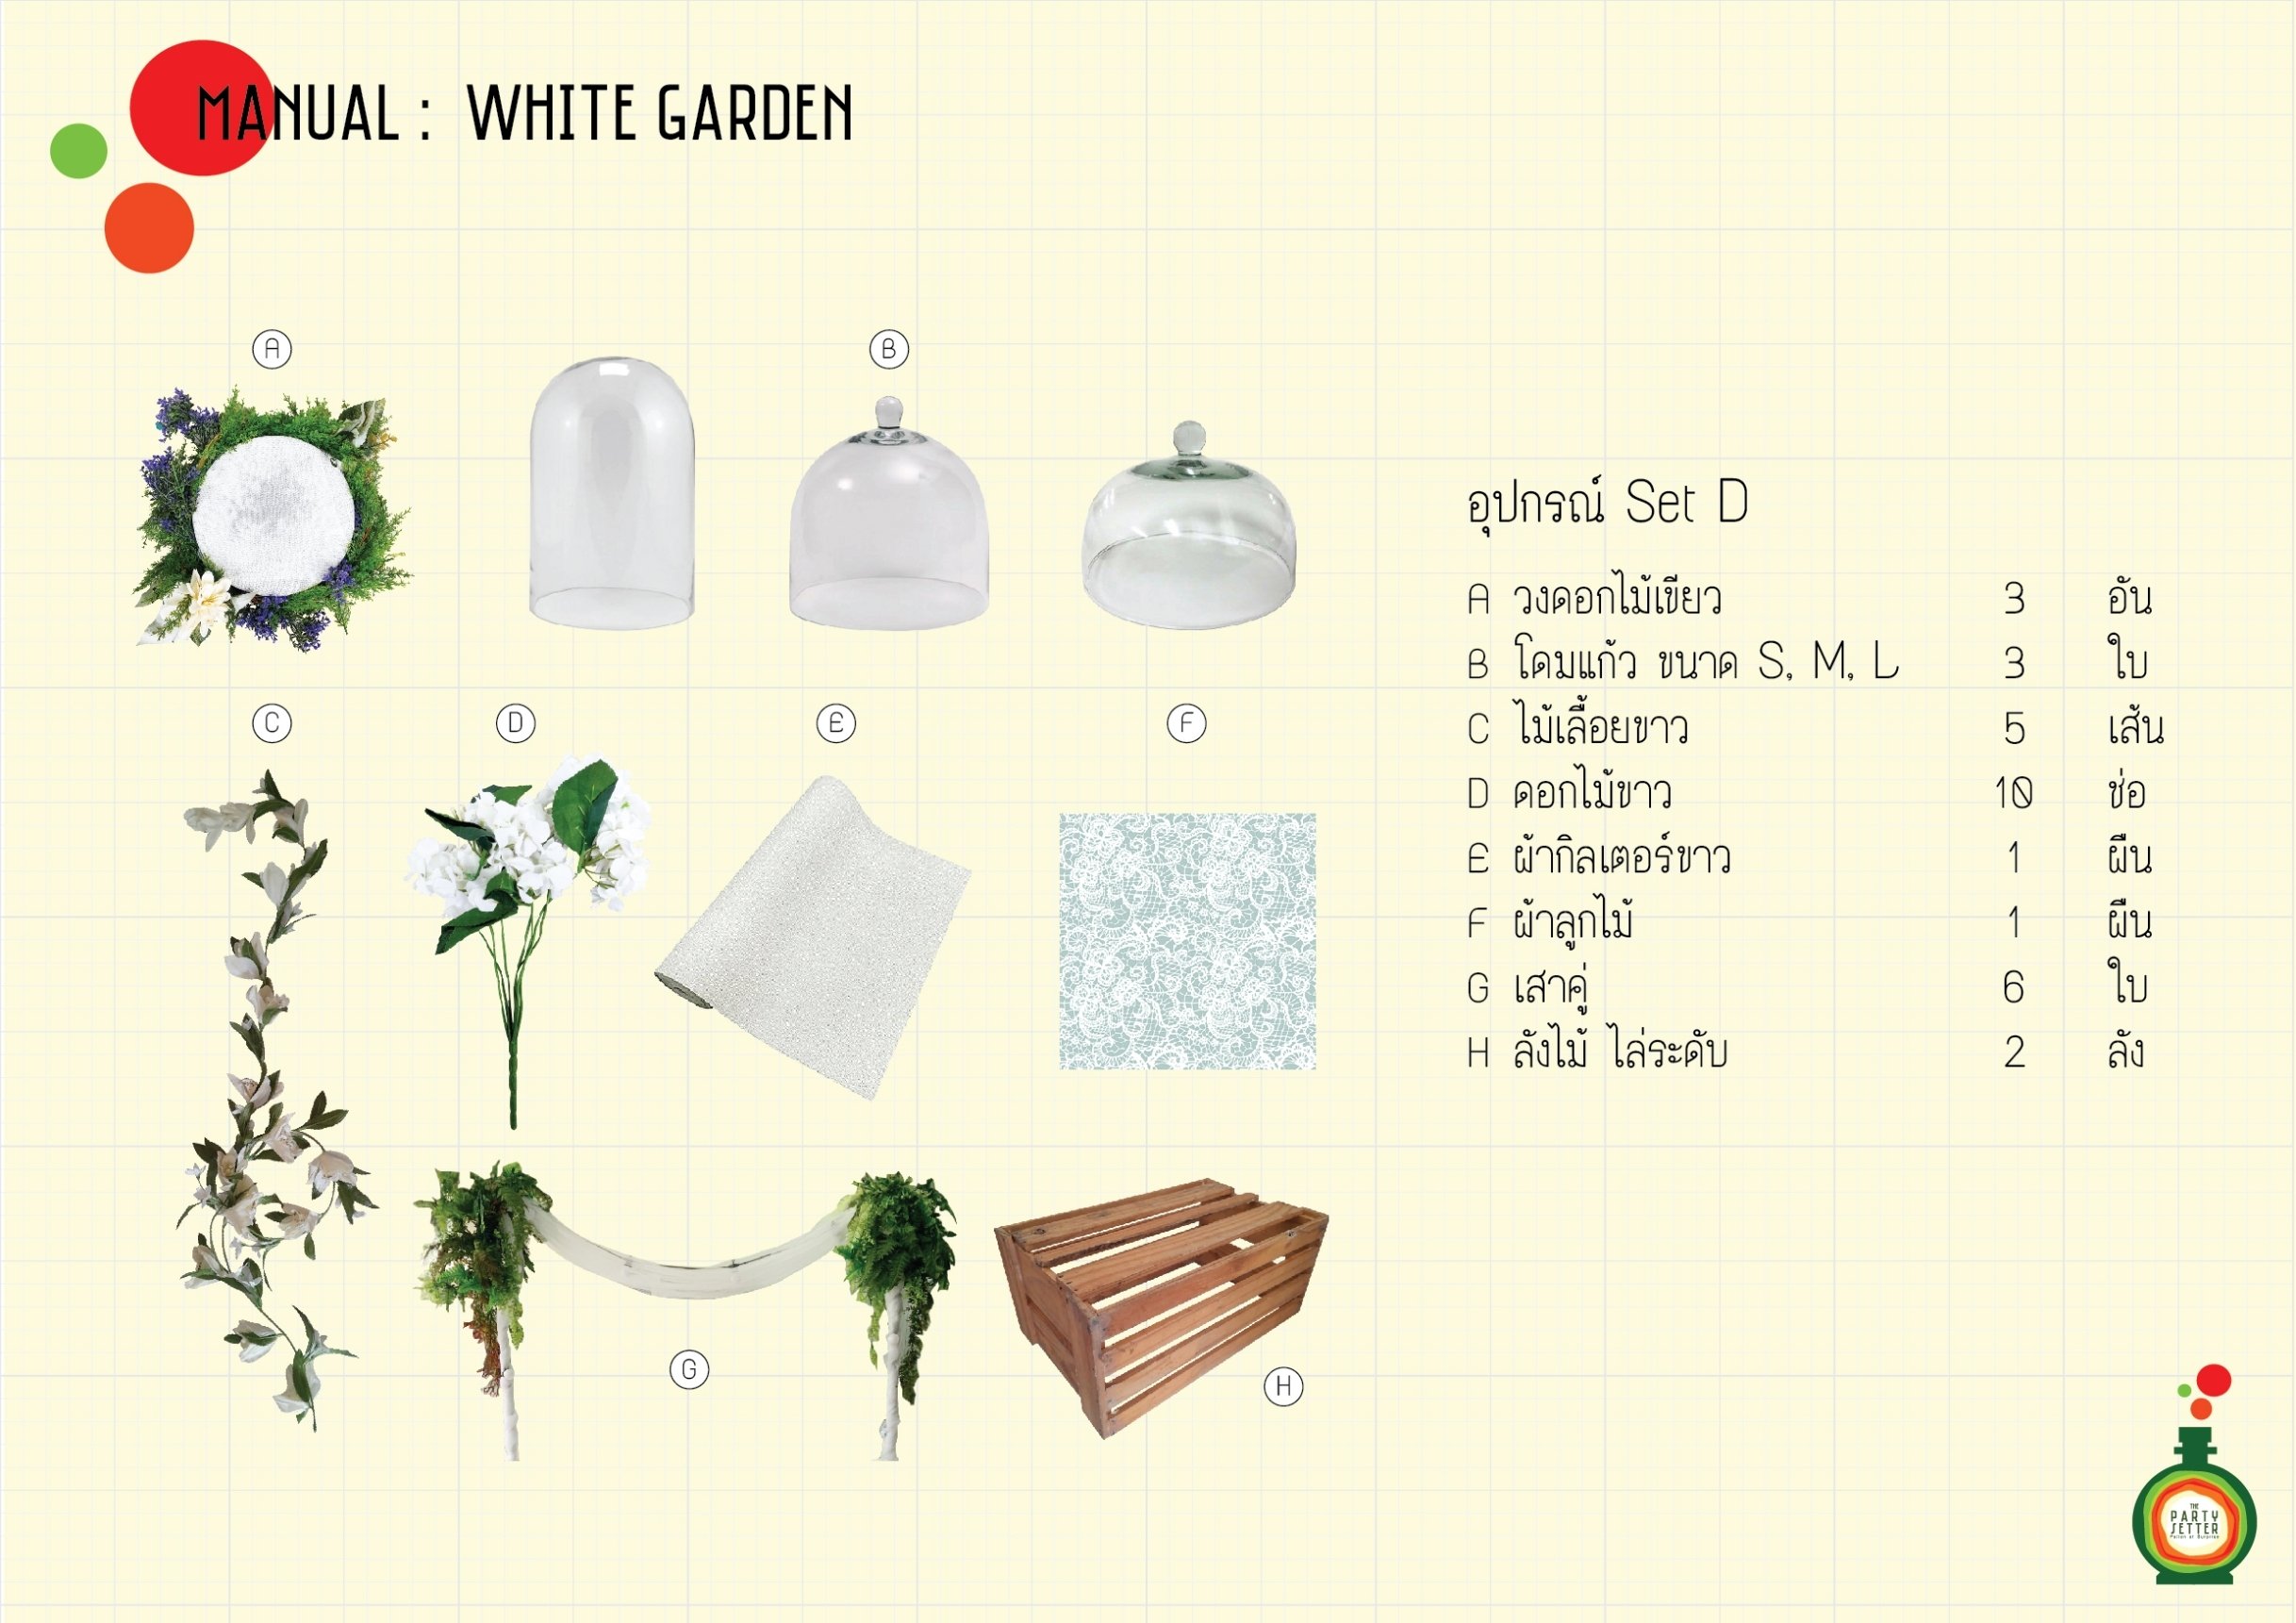 Manual_White Garden-01-01.jpg